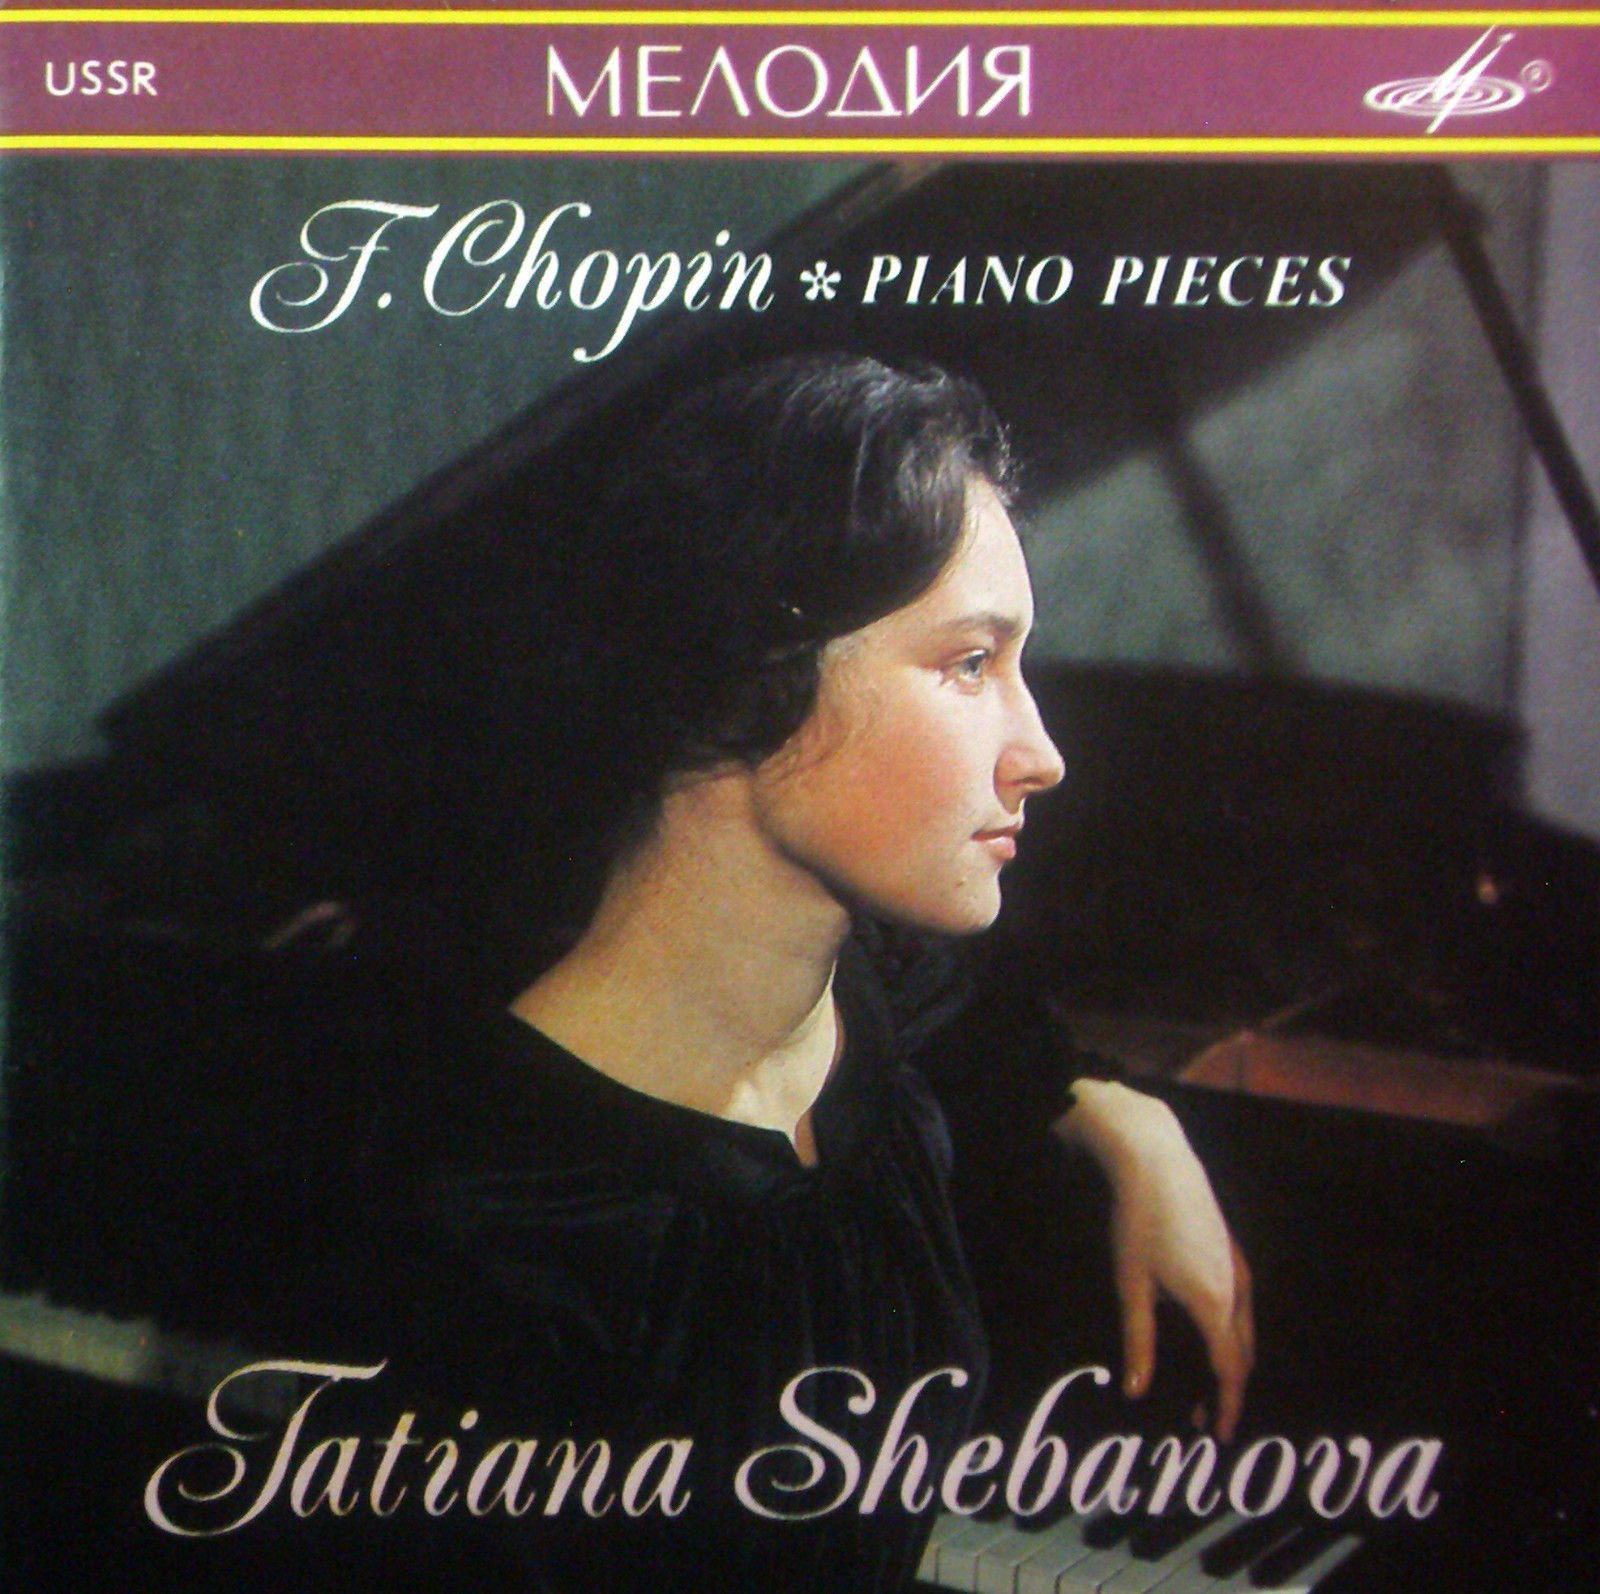 Chopin - Piano pieces - Tatiana Shebanova